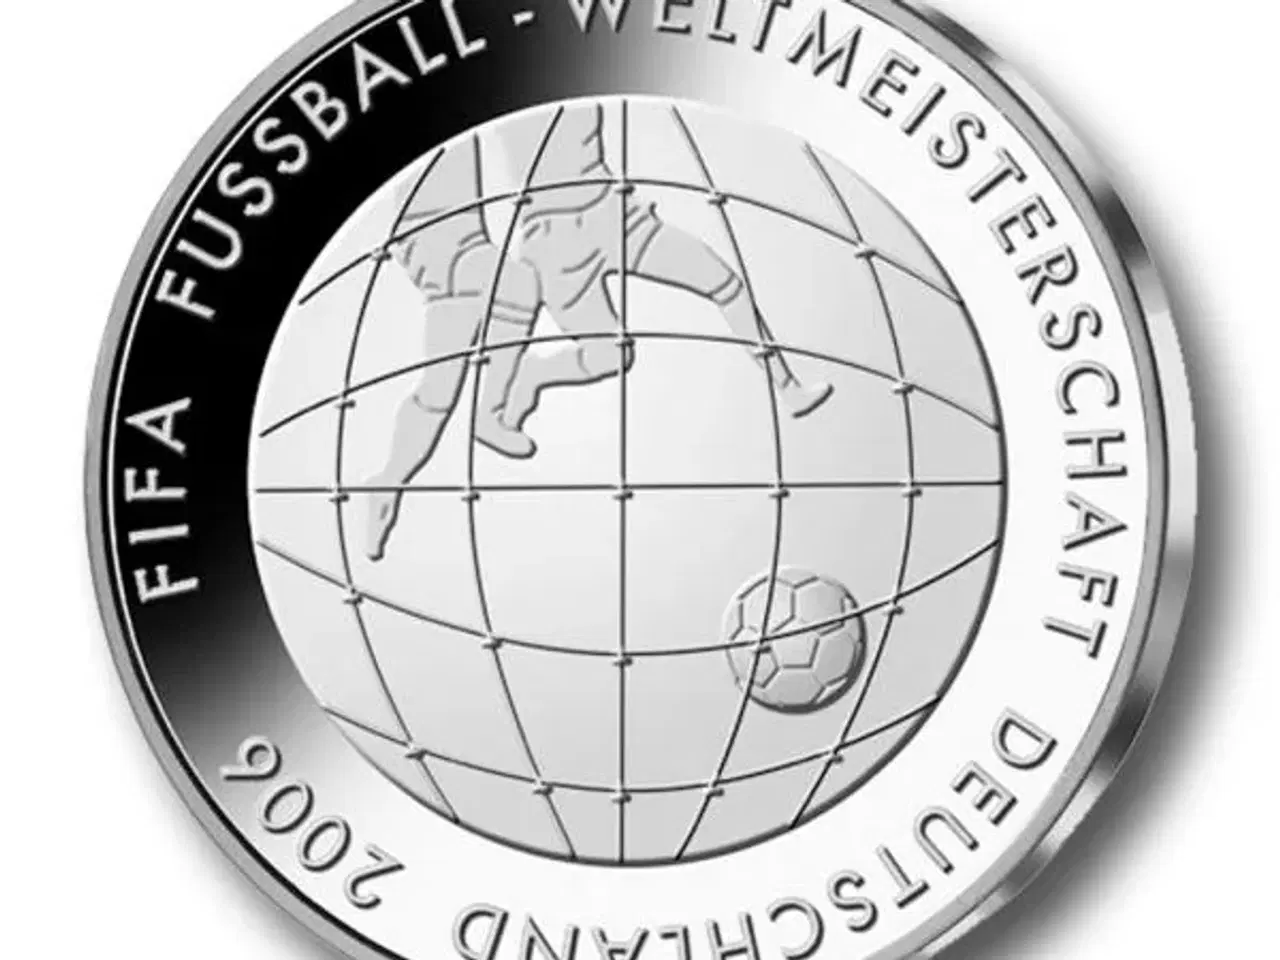 Billede 2 - VM fodbold 2006 Tyskland Erindringsmønt